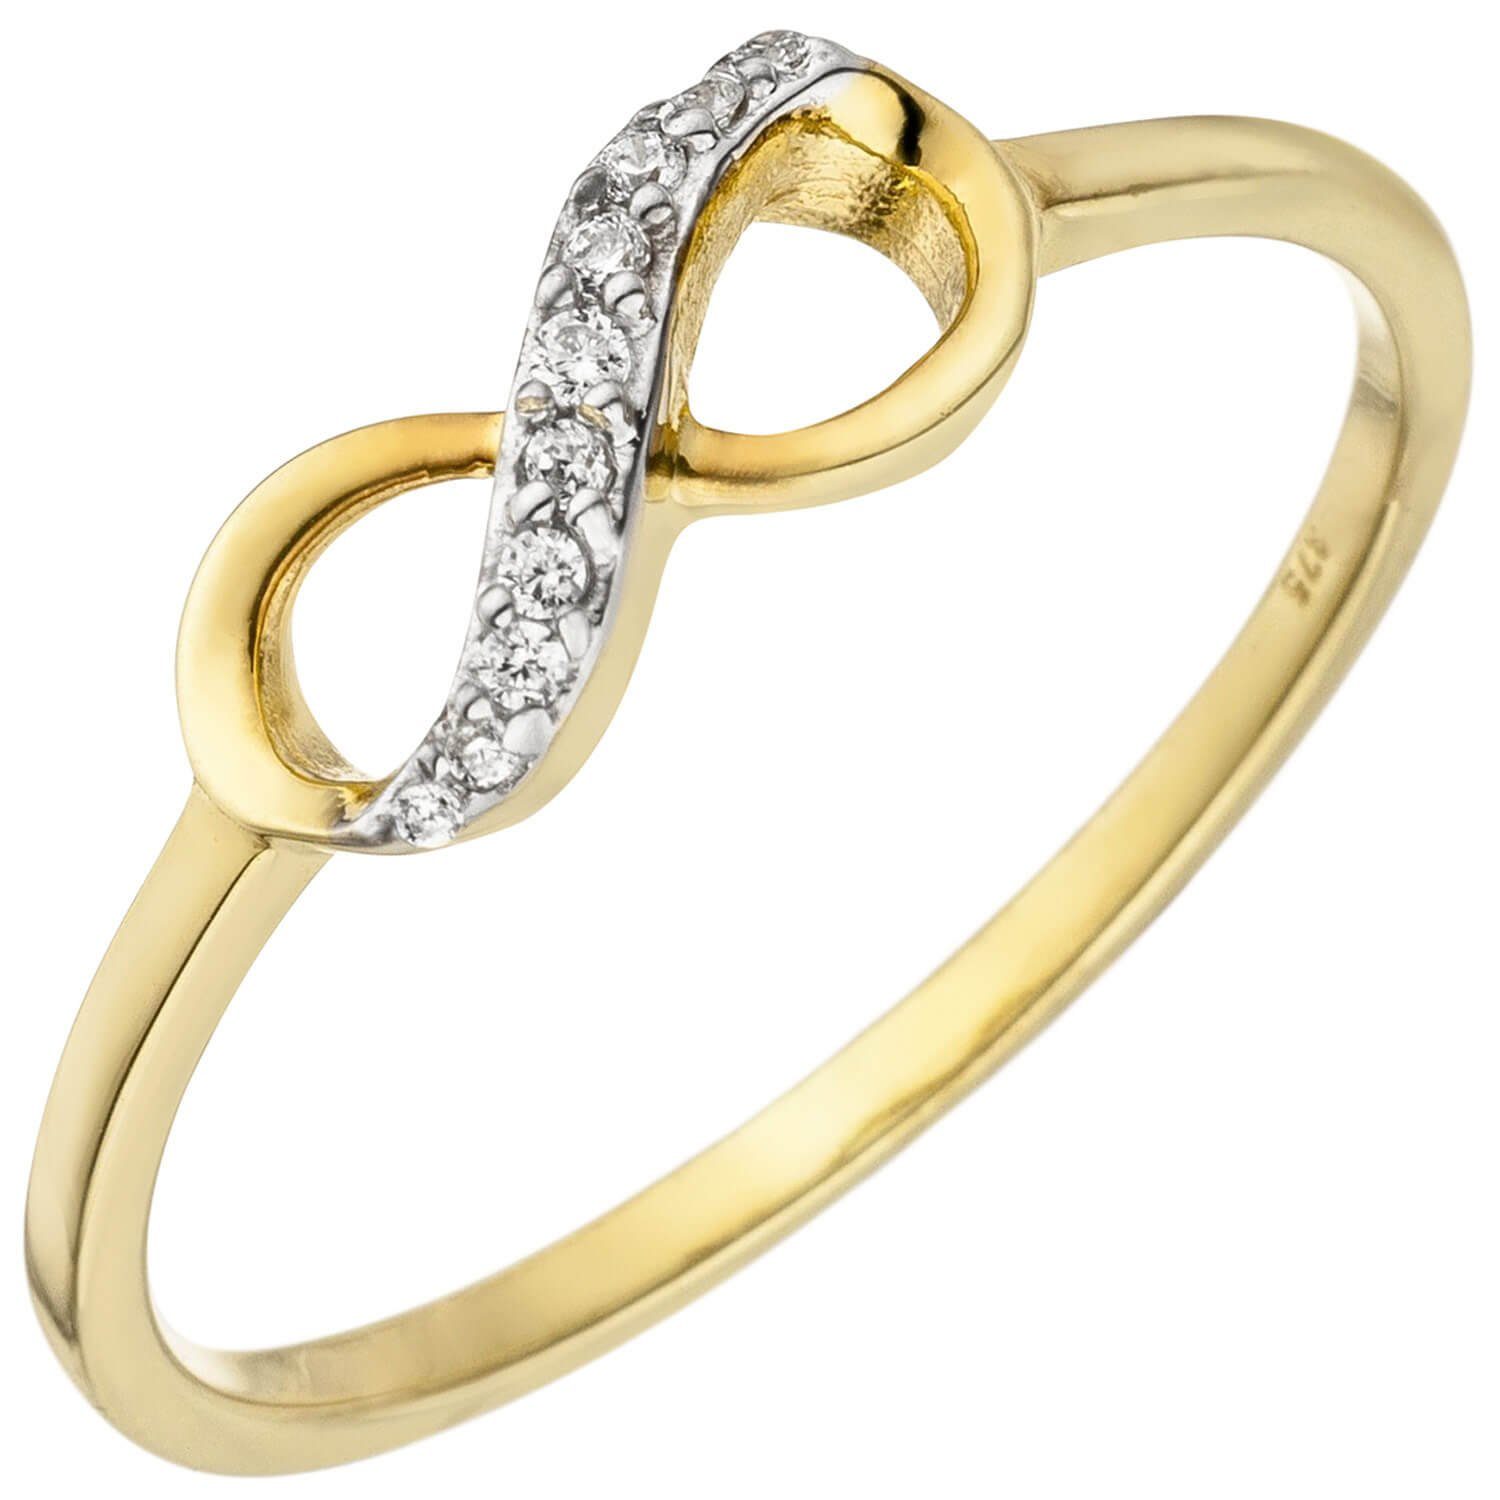 Schmuck Krone Fingerring Ring Damenring Unendlichkeit 8 Infinity mit weißen Zirkonia, 375 Gold Gelbgold, Gold 375